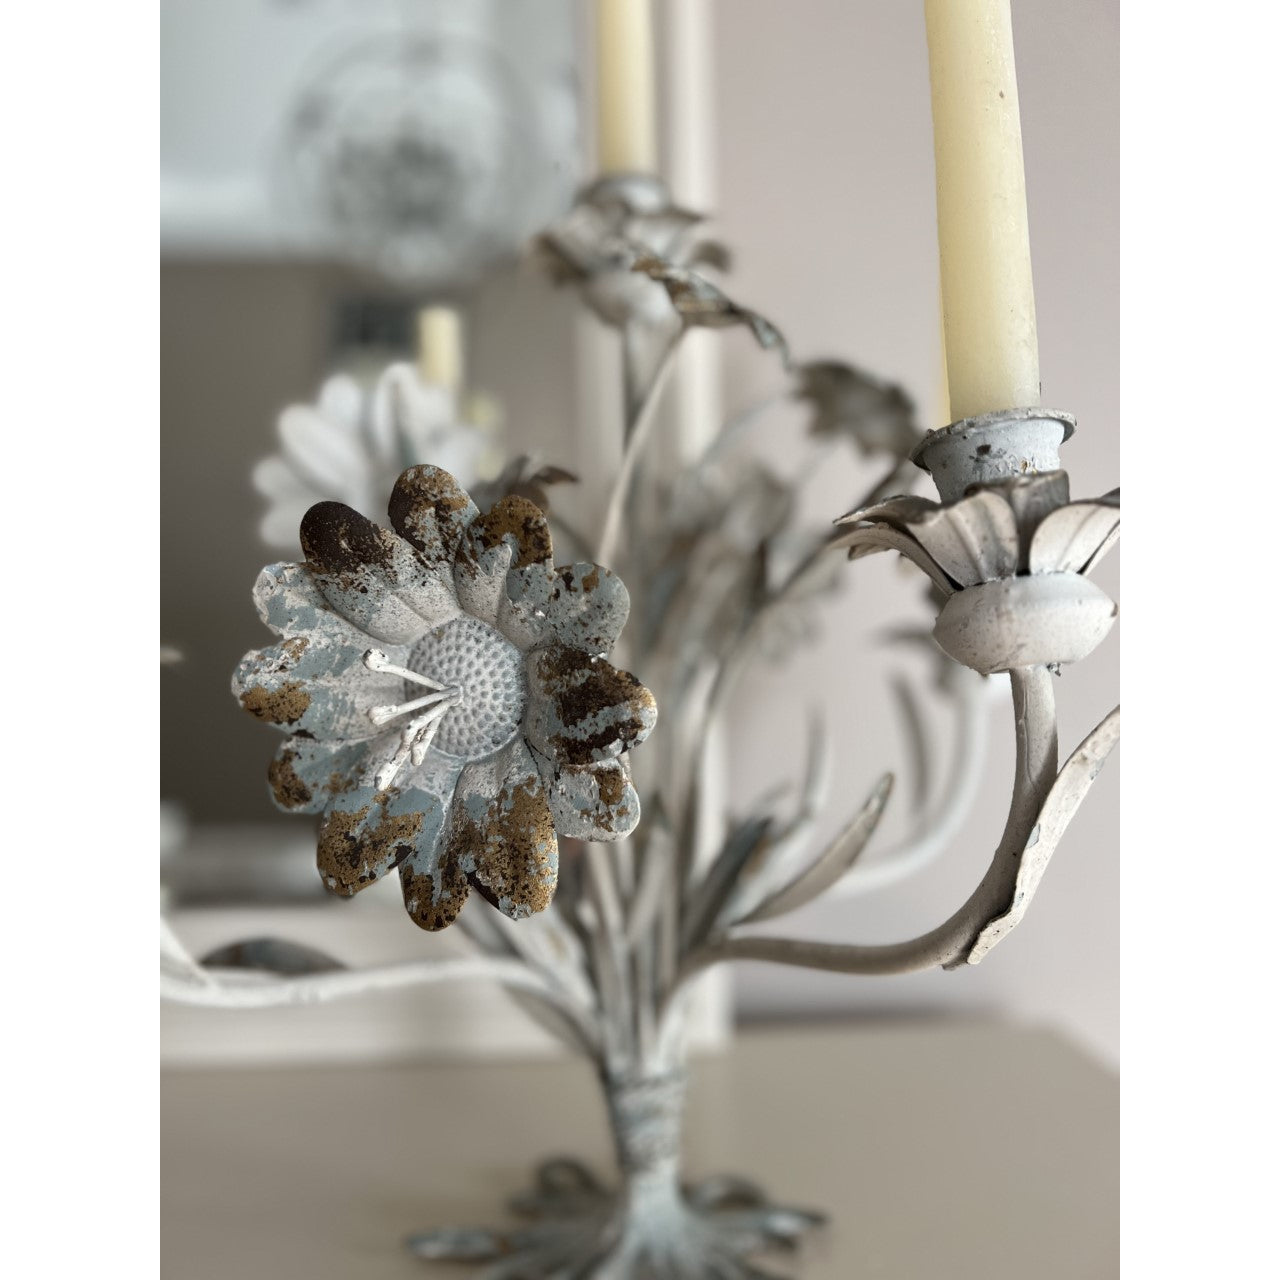 Bouquets de Fleurs Tabletop Sculpture Candle Holder - More Coming Soon!